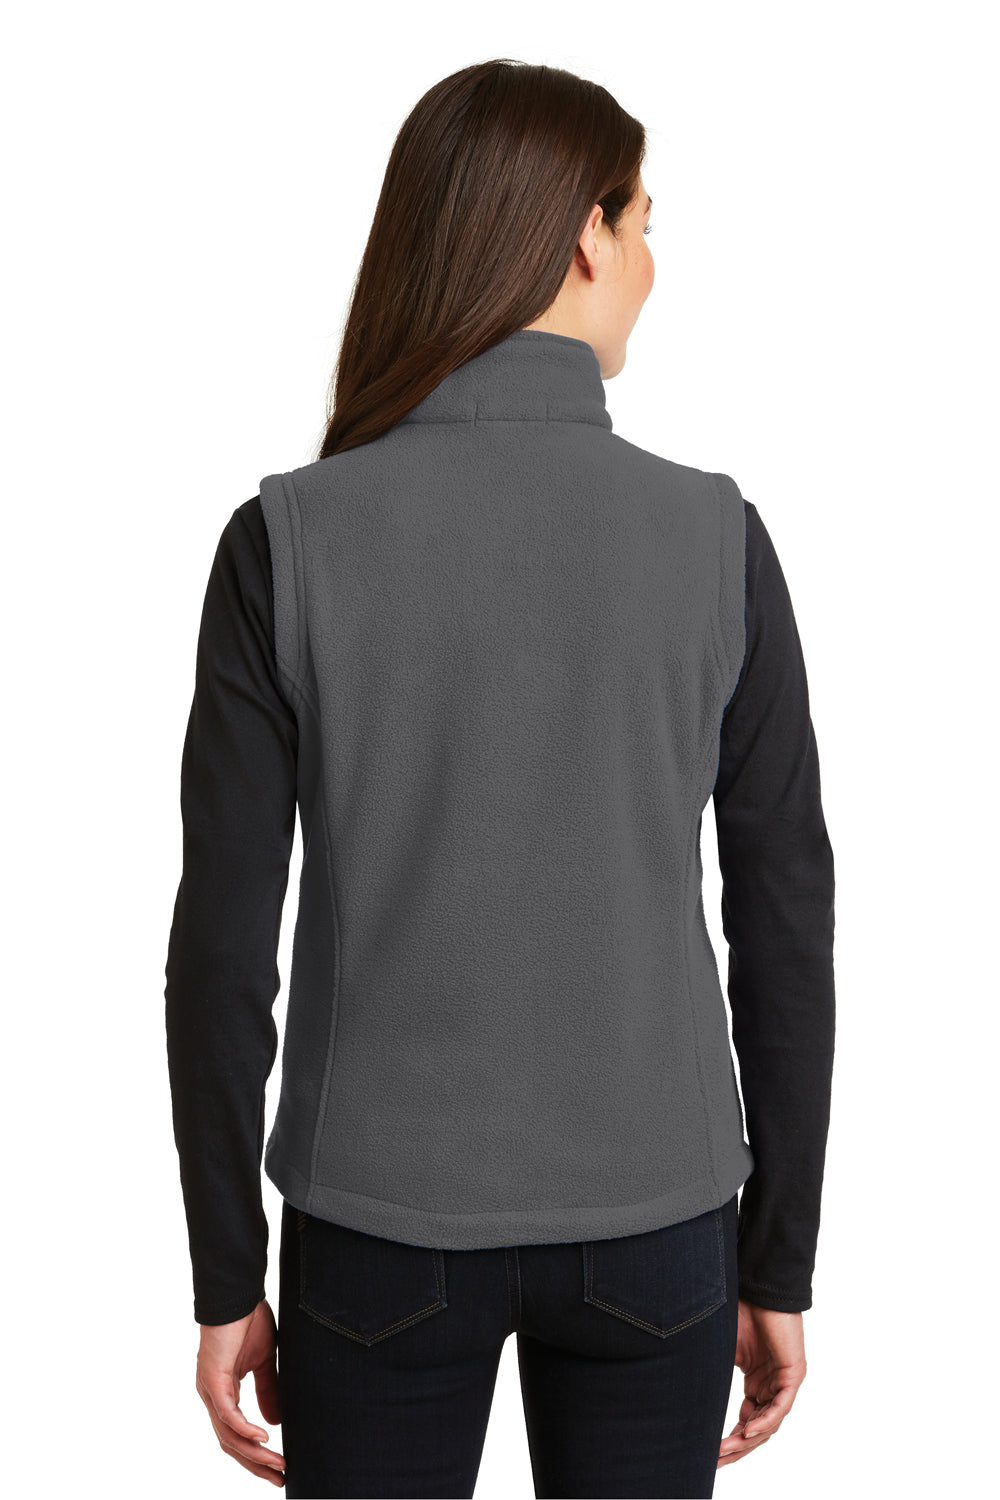 Port Authority L219 Womens Full Zip Fleece Vest Iron Grey Back